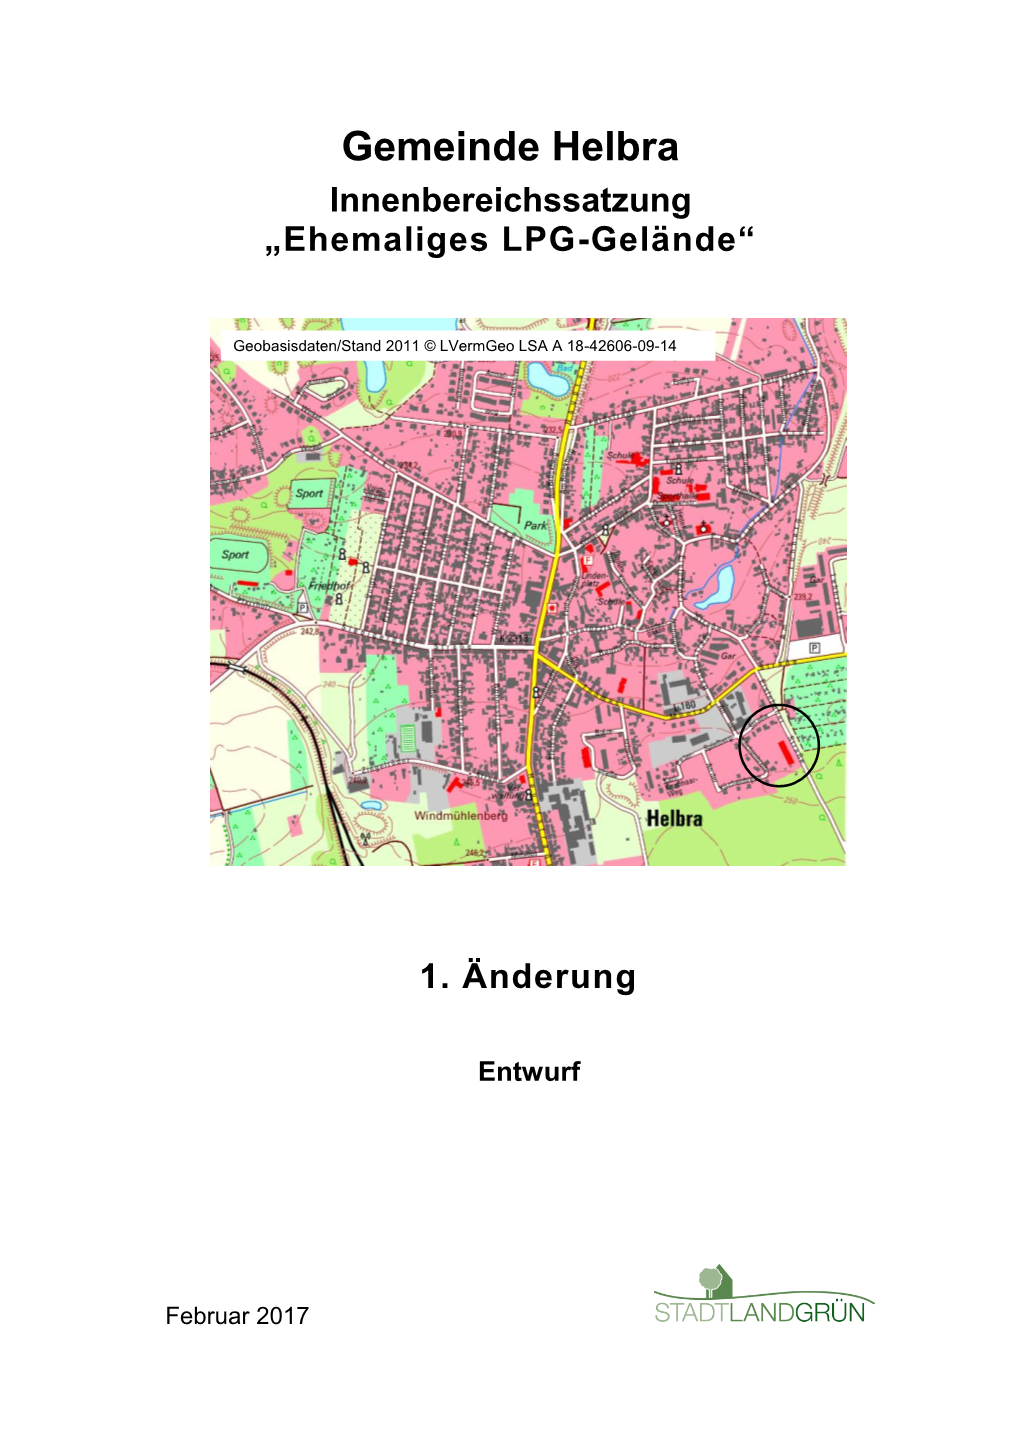 Gemeinde Helbra Innenbereichssatzung „Ehemaliges LPG-Gelände“